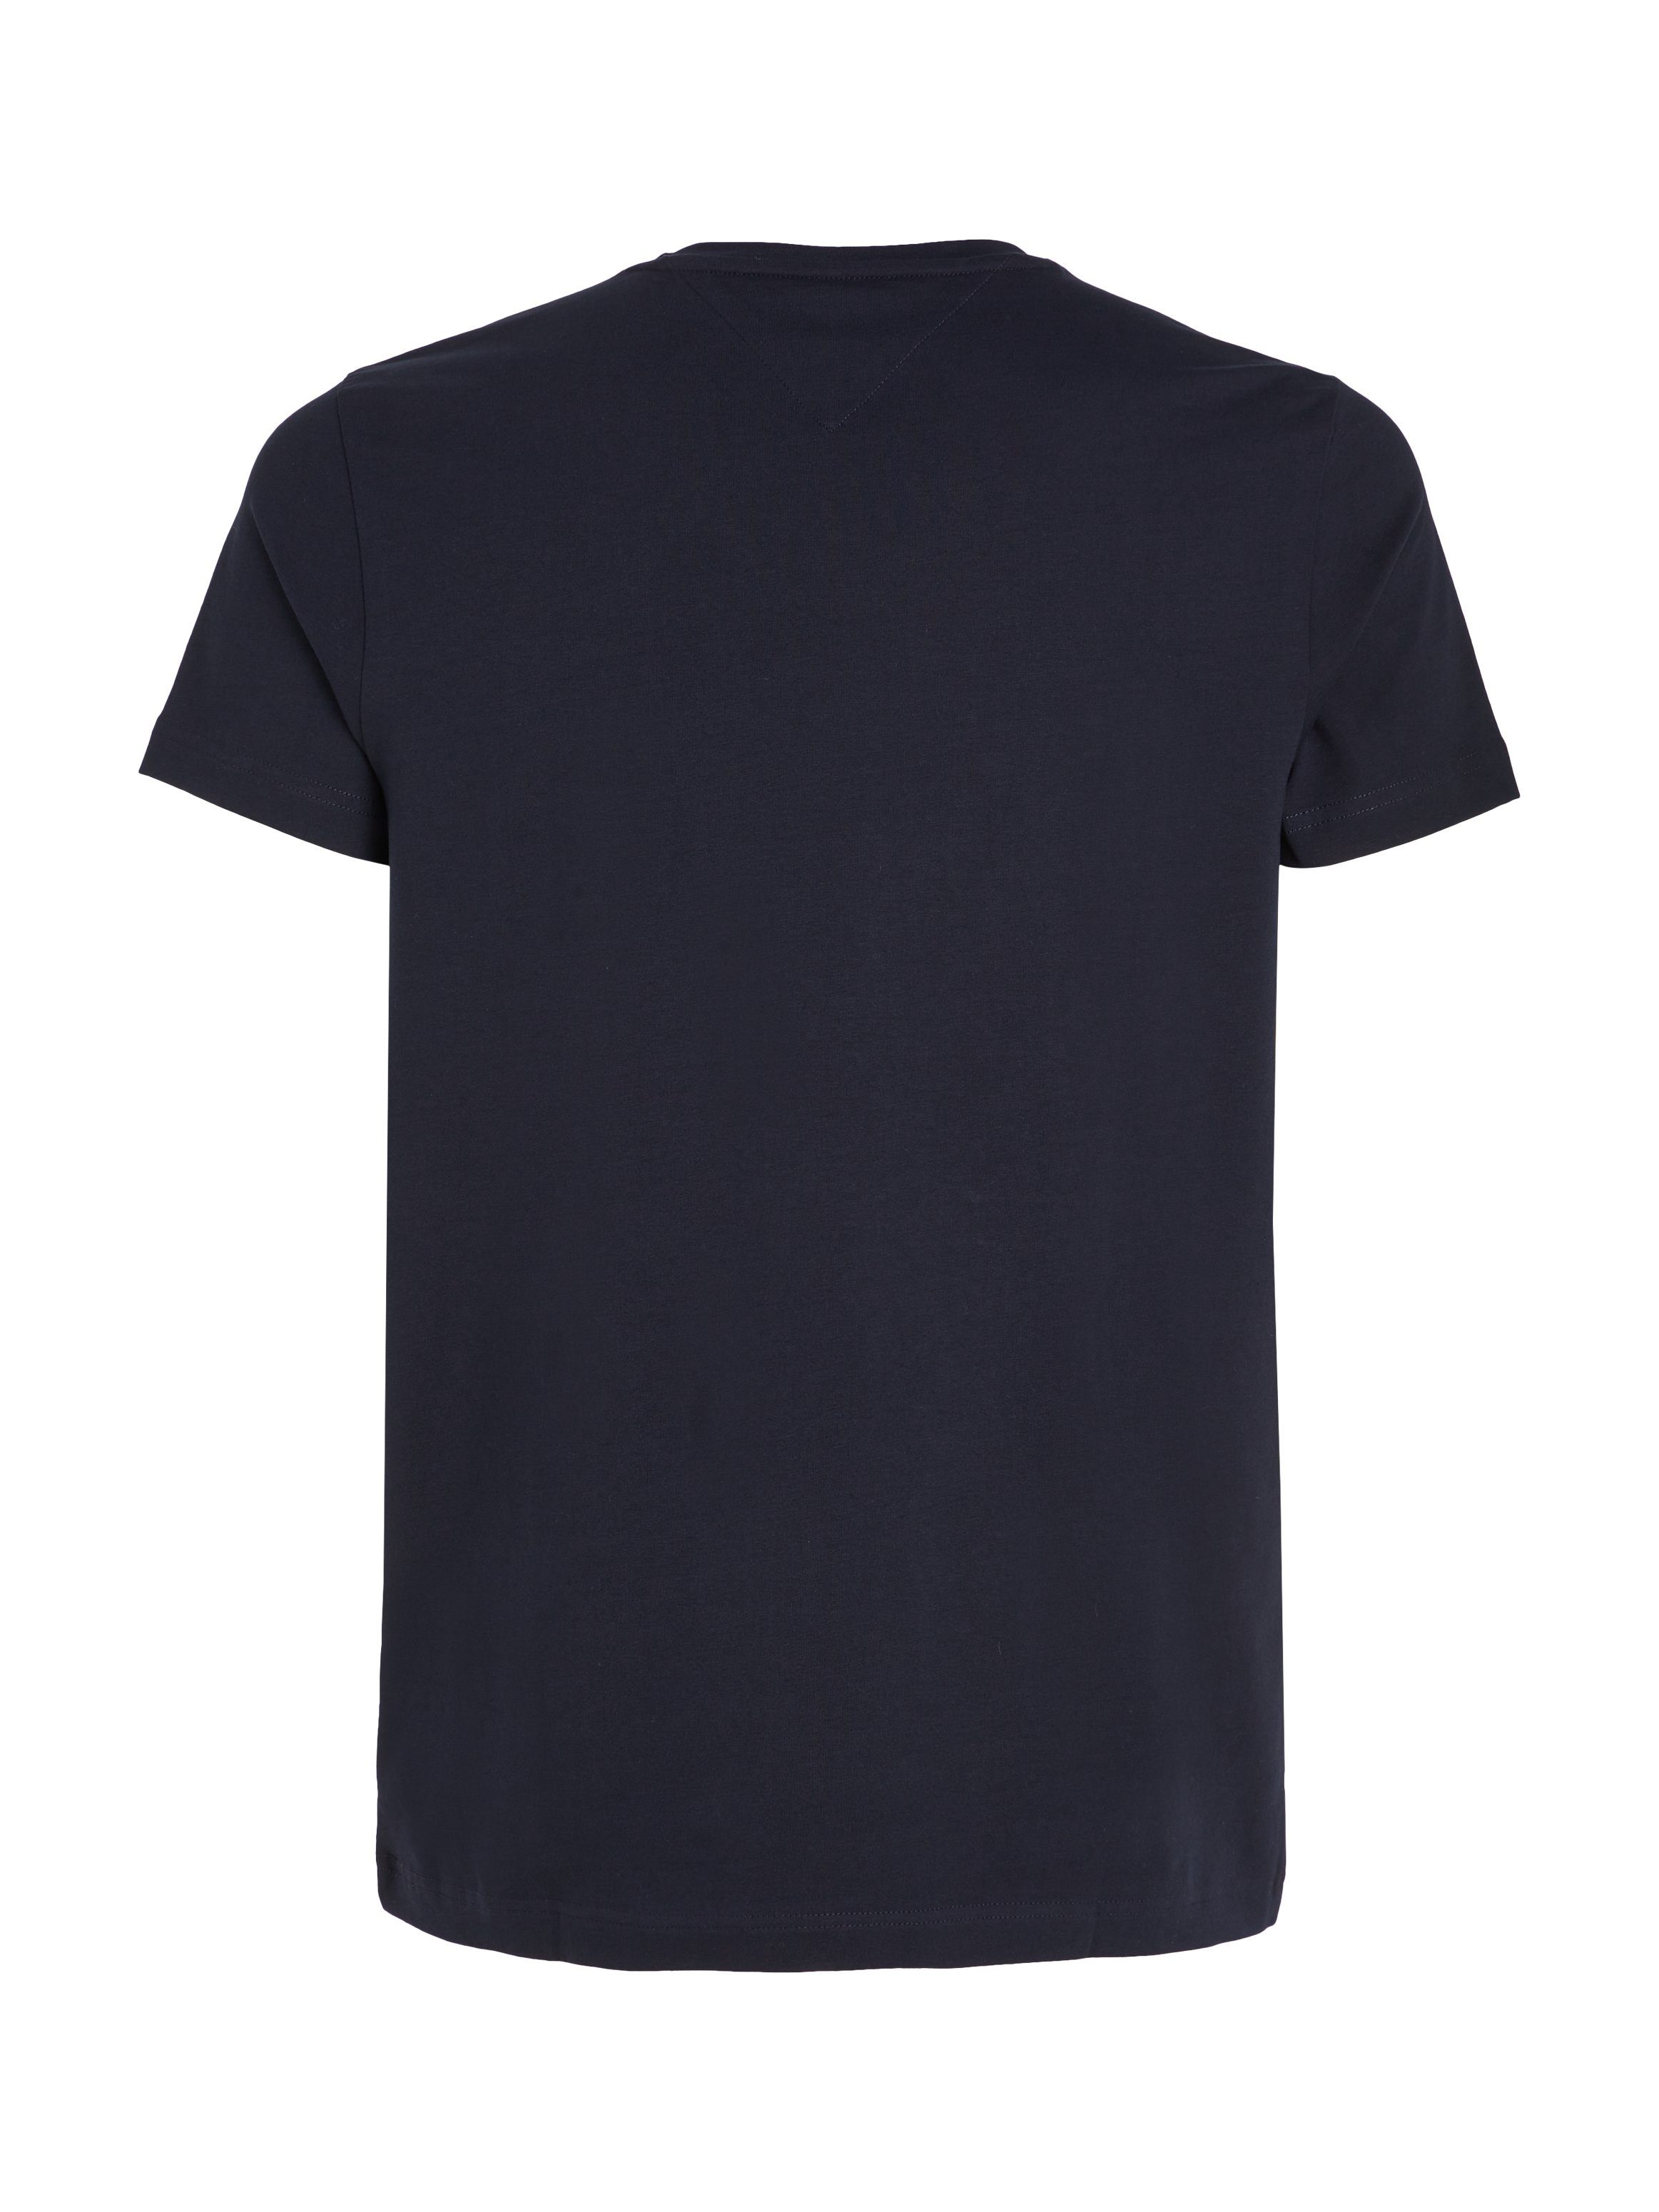 V-Shirt Tommy T-Shirt Hilfiger navy Stretch Slim